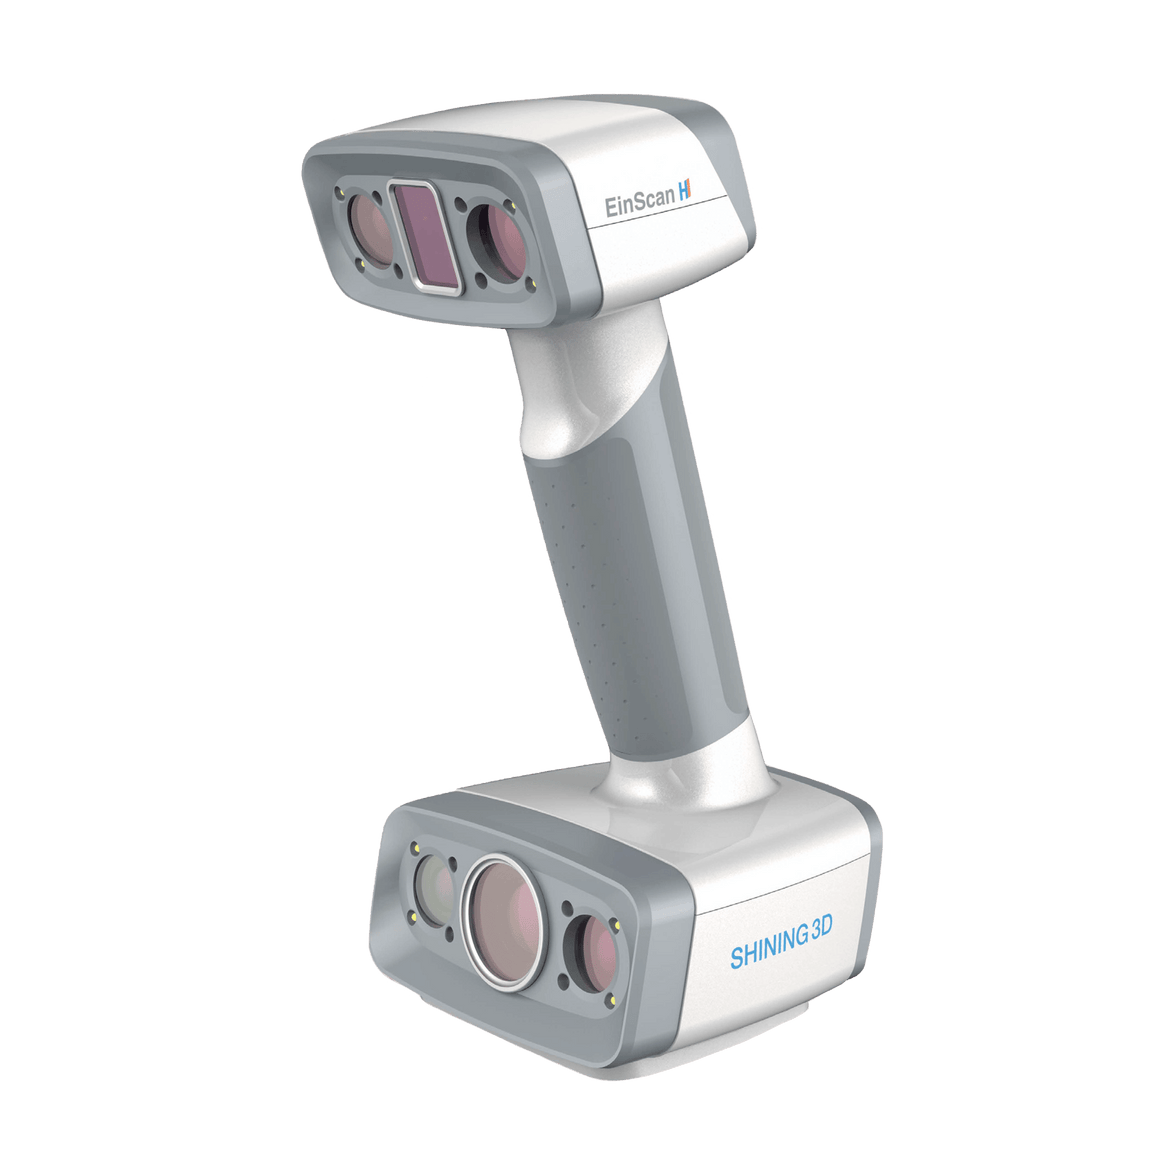 Shining3D - EinScan H - Hybrid LED and IR Light 3D Scanner - Shop3D.ca